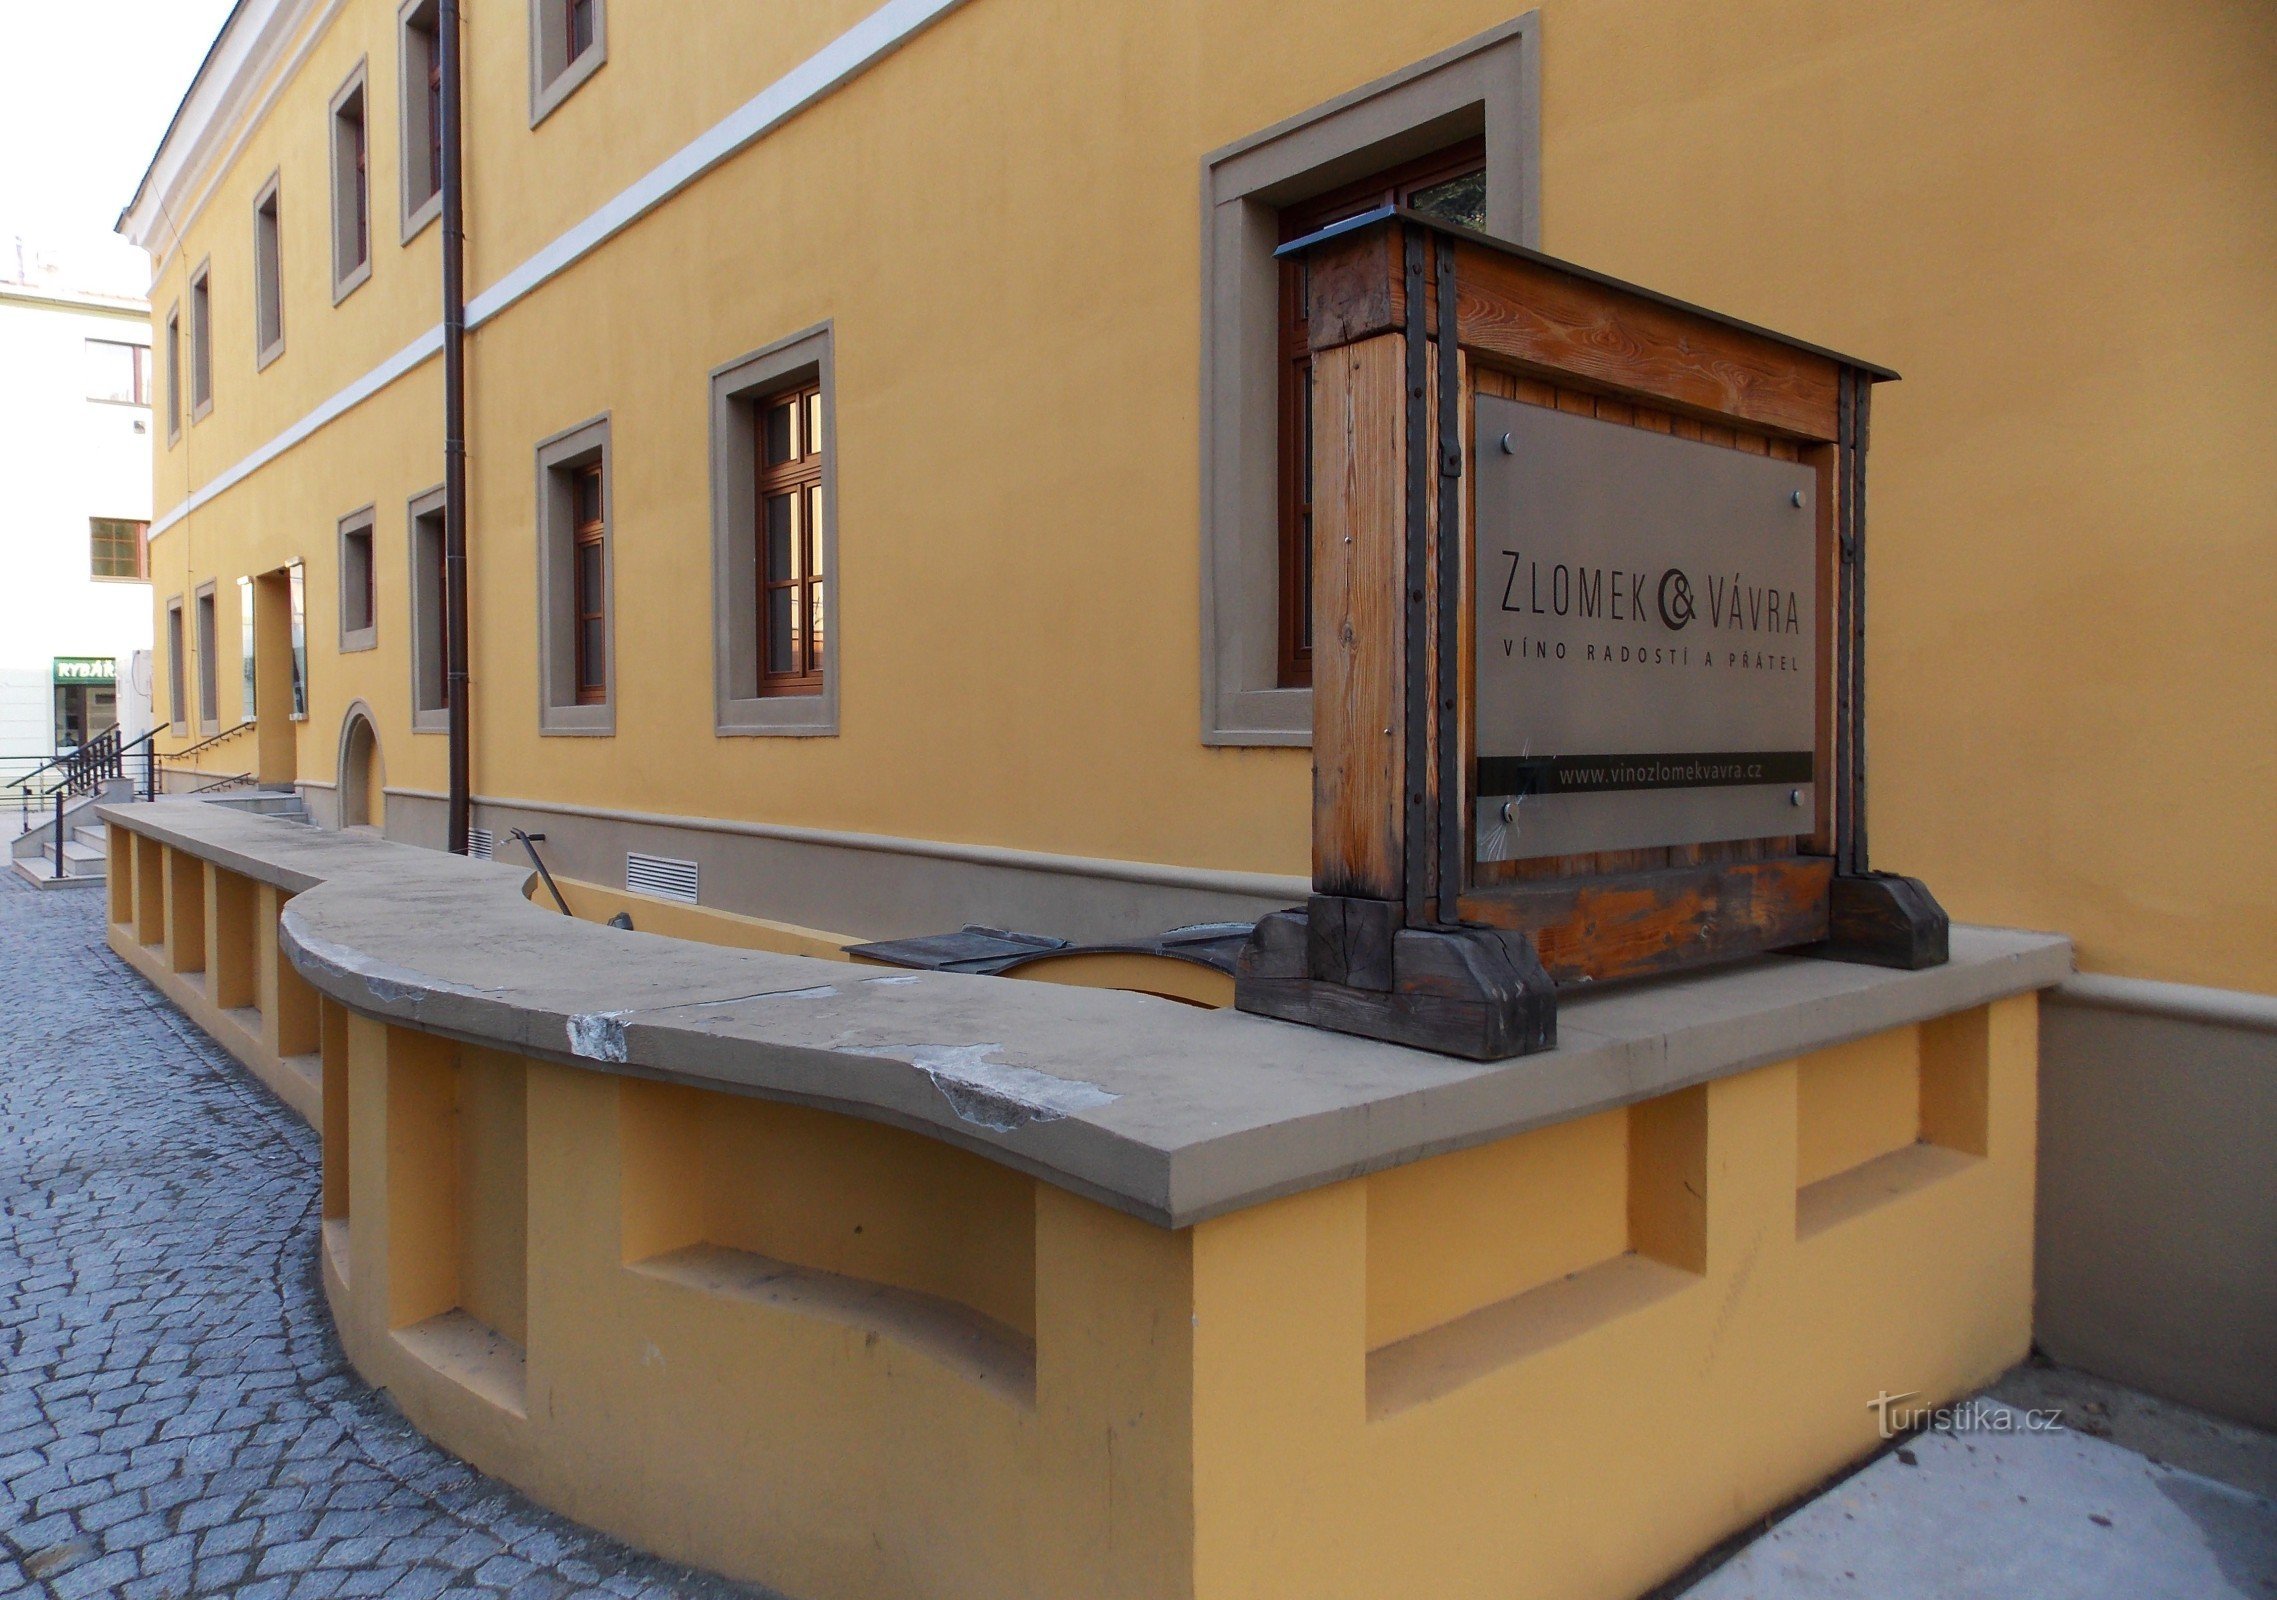 Galería de vinos eslovacos en Uh. Hradisti